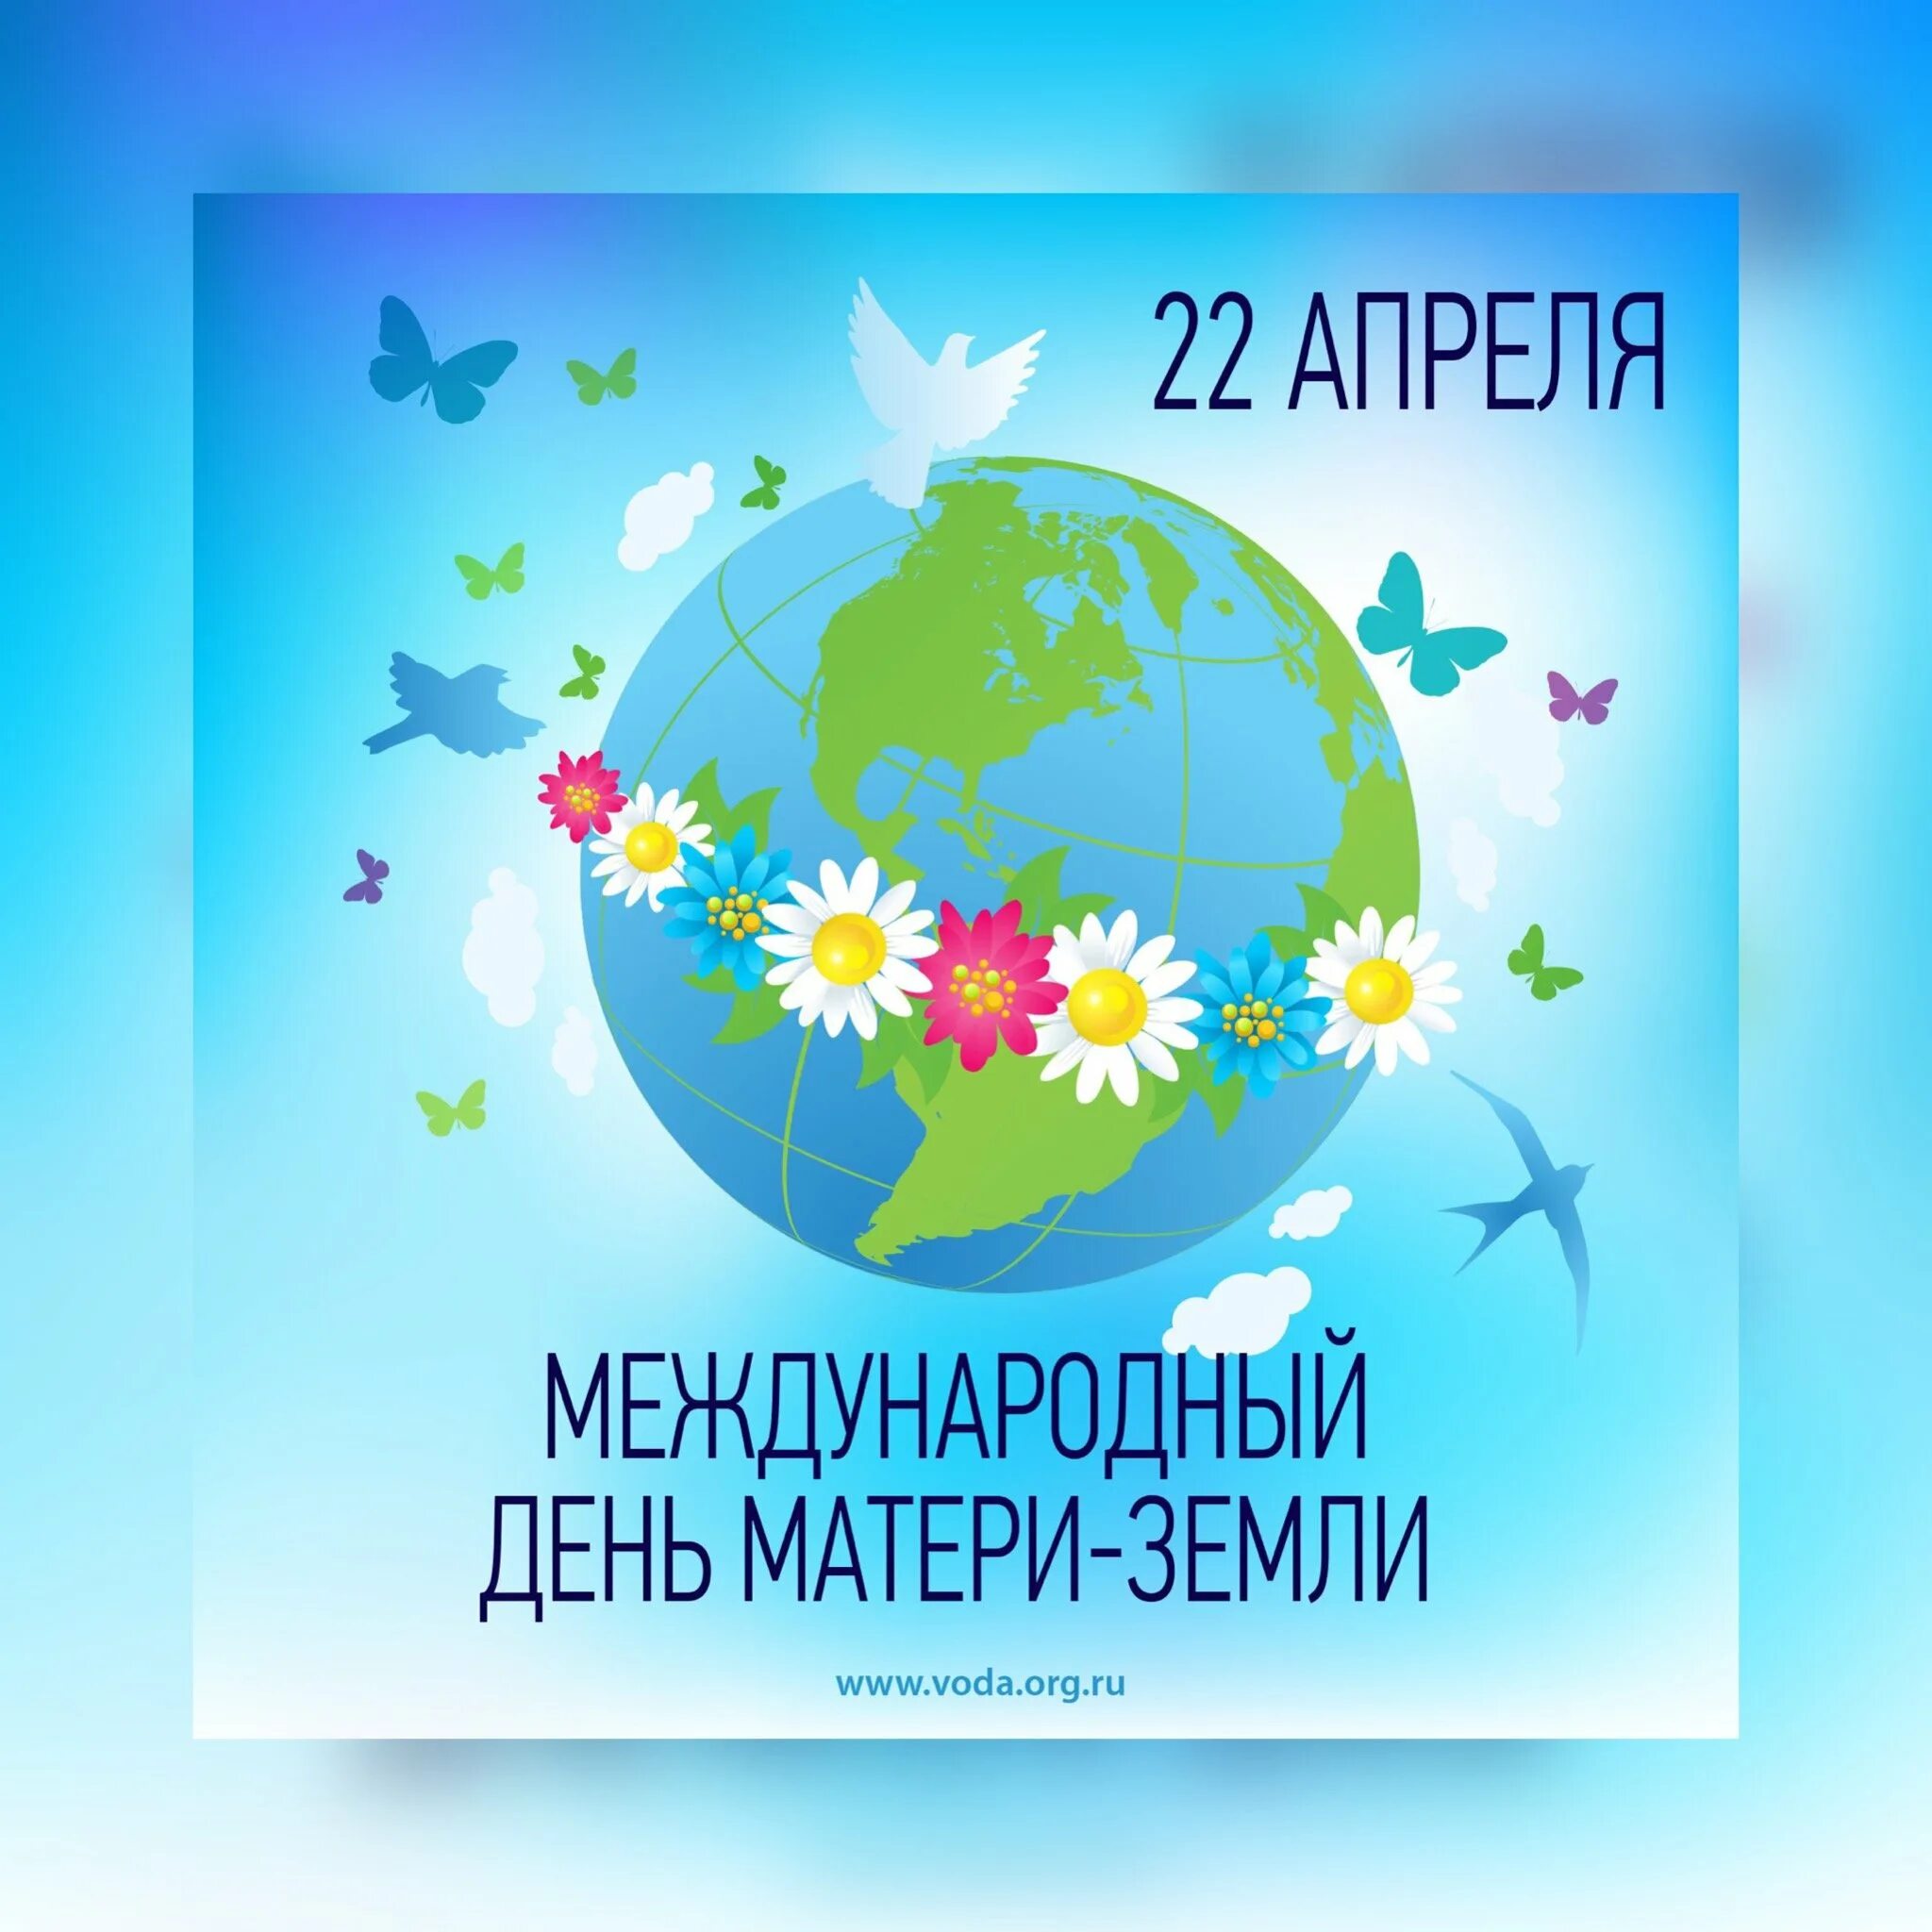 22 апреля международный. Международный день земли. Международный день матери-земли. 22 Апреля Международный день земли. Международный день матери-земли 22 апреля.